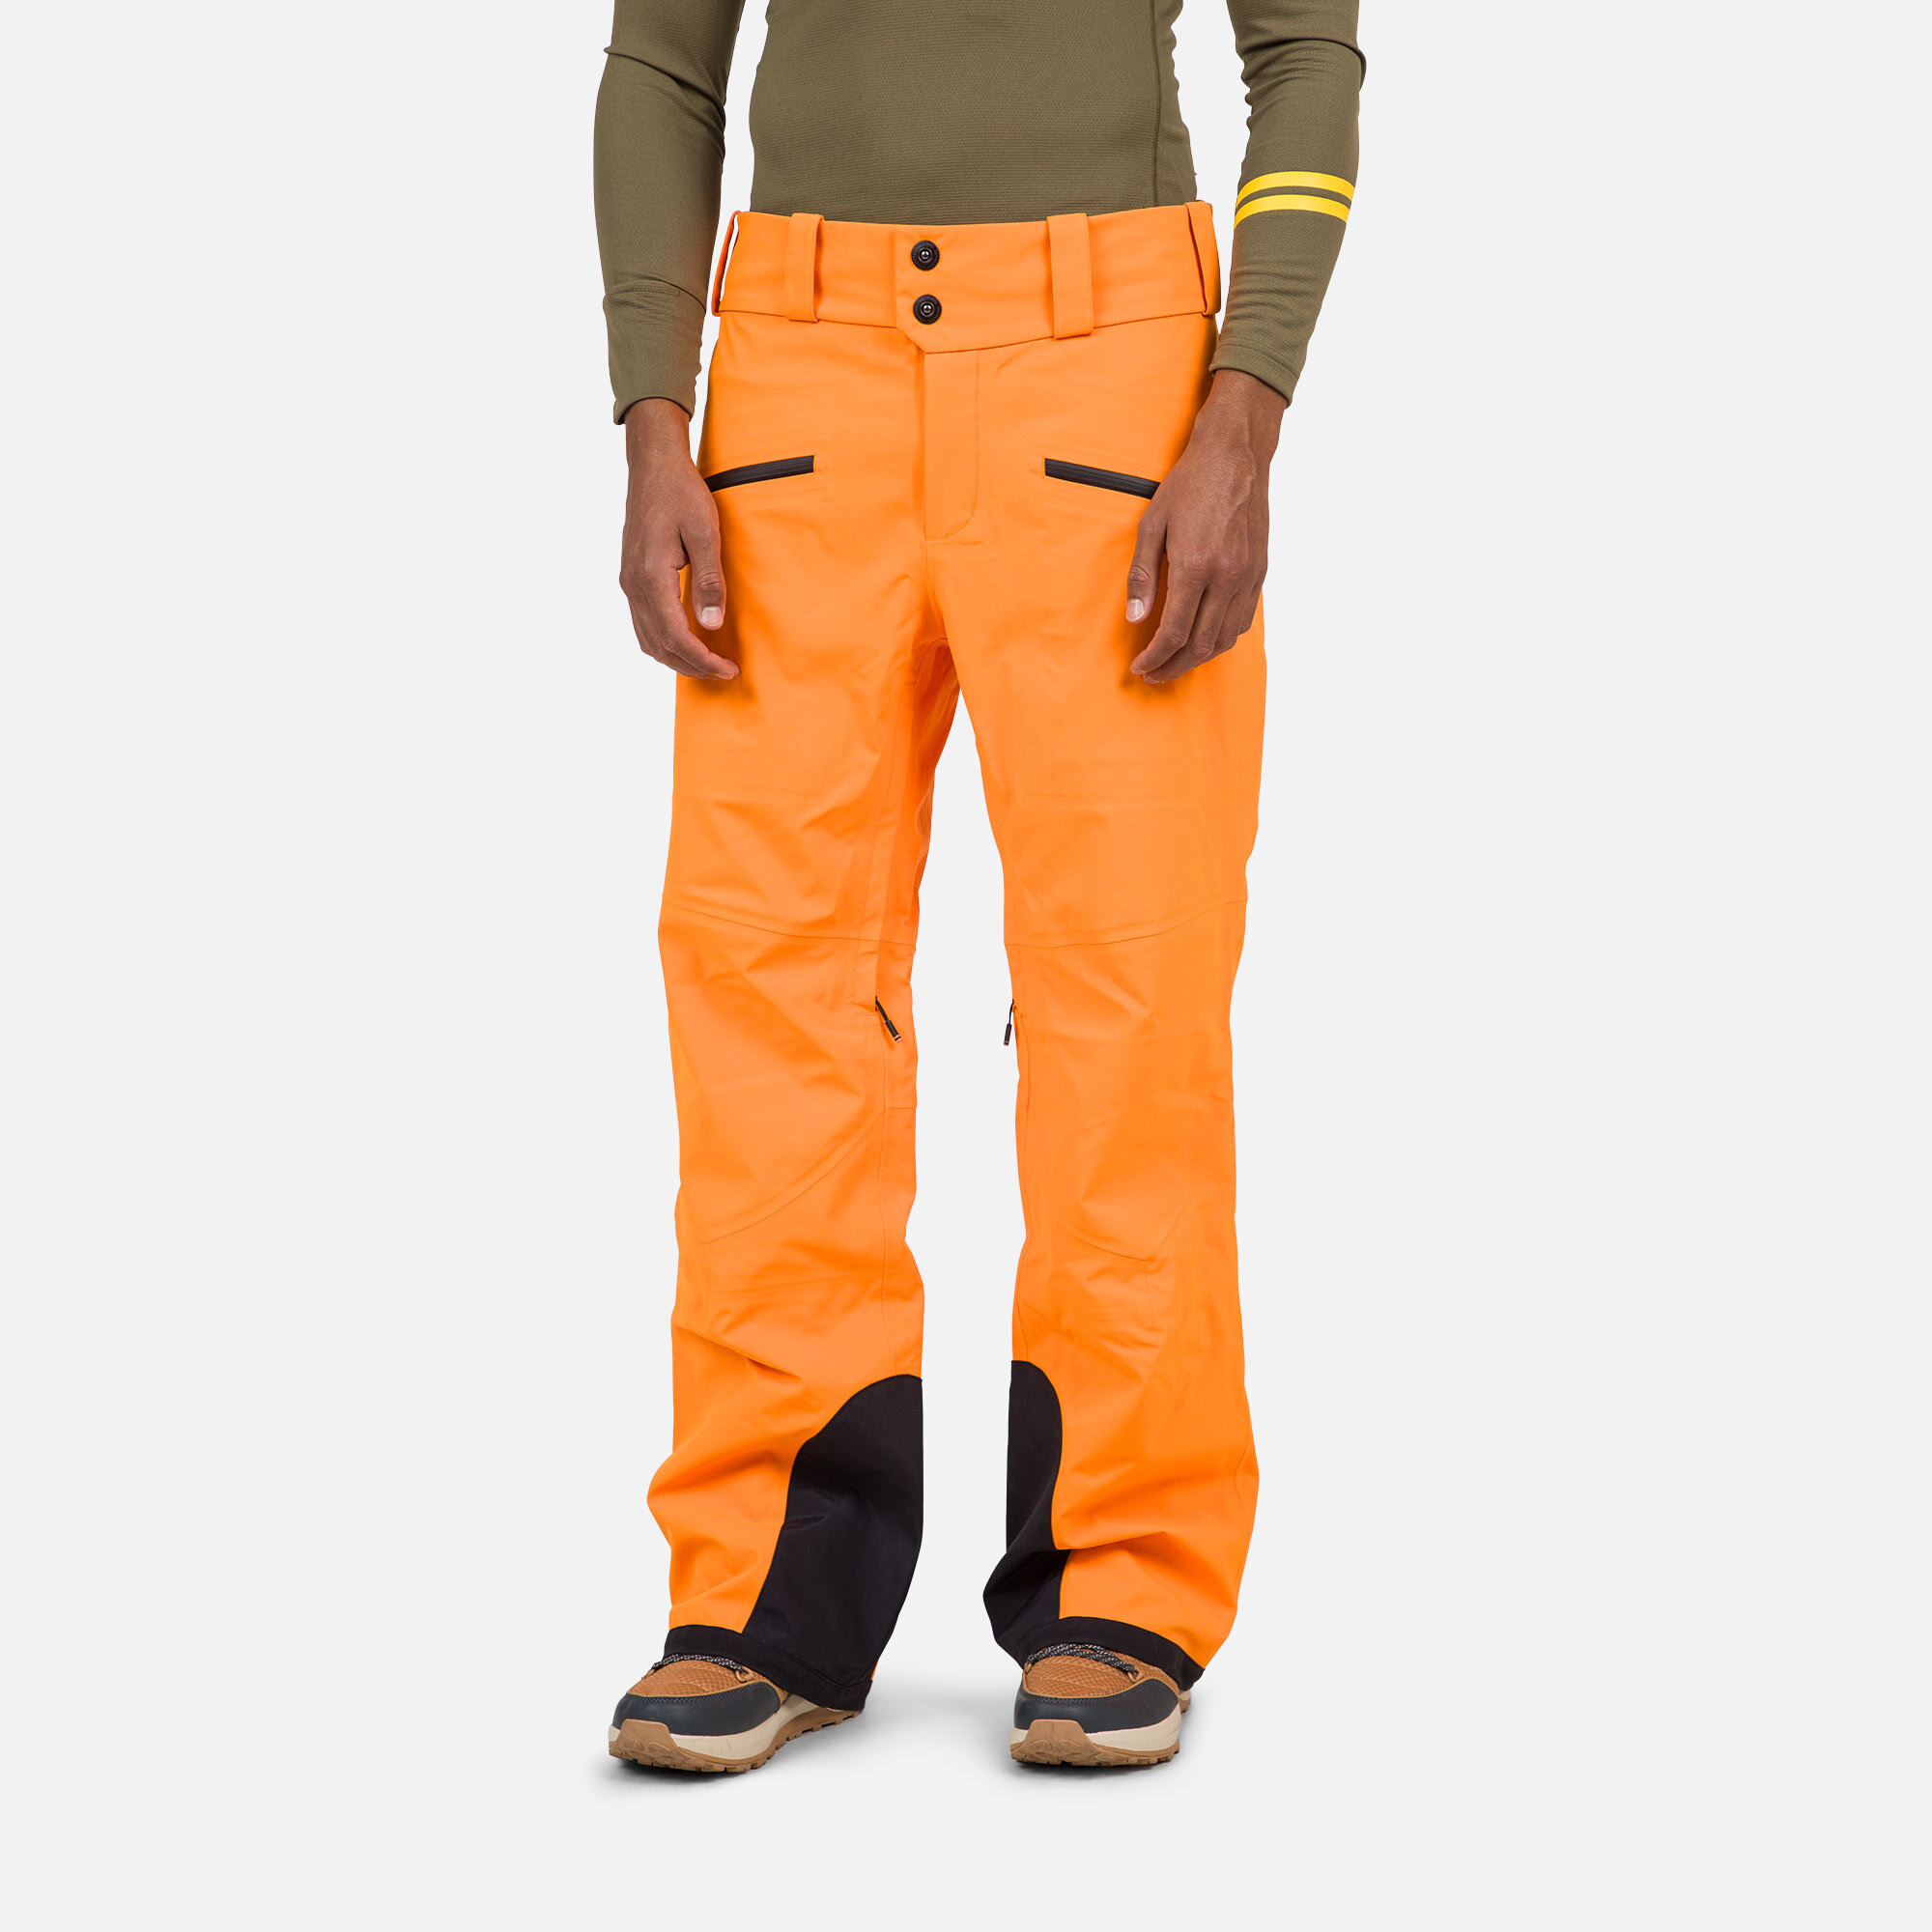 Pantalon de ski Evader homme